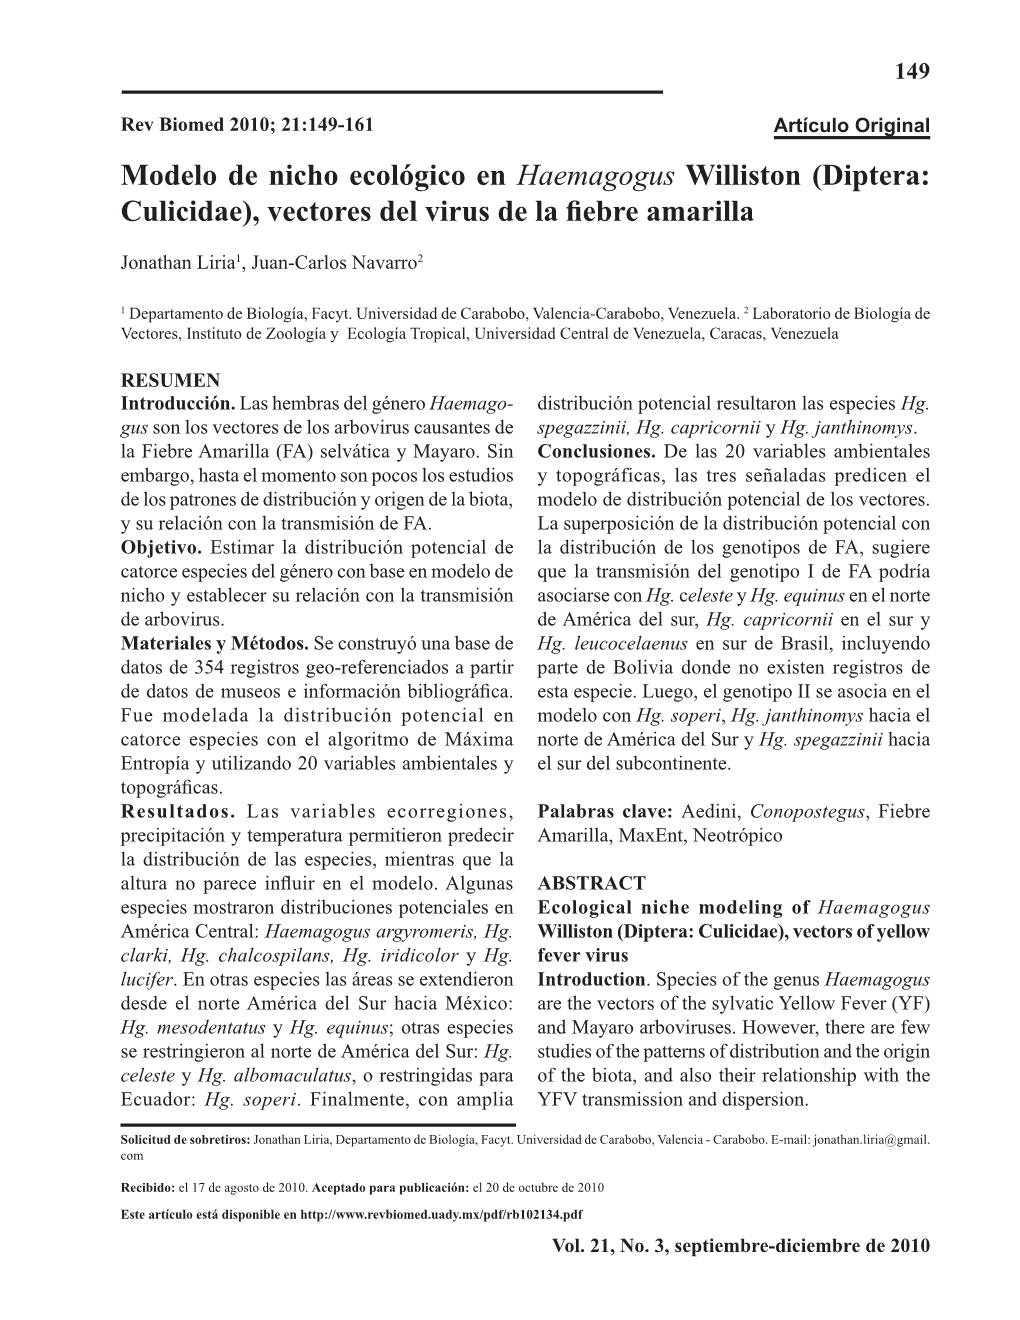 Modelo De Nicho Ecológico En Haemagogus Williston (Diptera: Culicidae), Vectores Del Virus De La Fiebre Amarilla